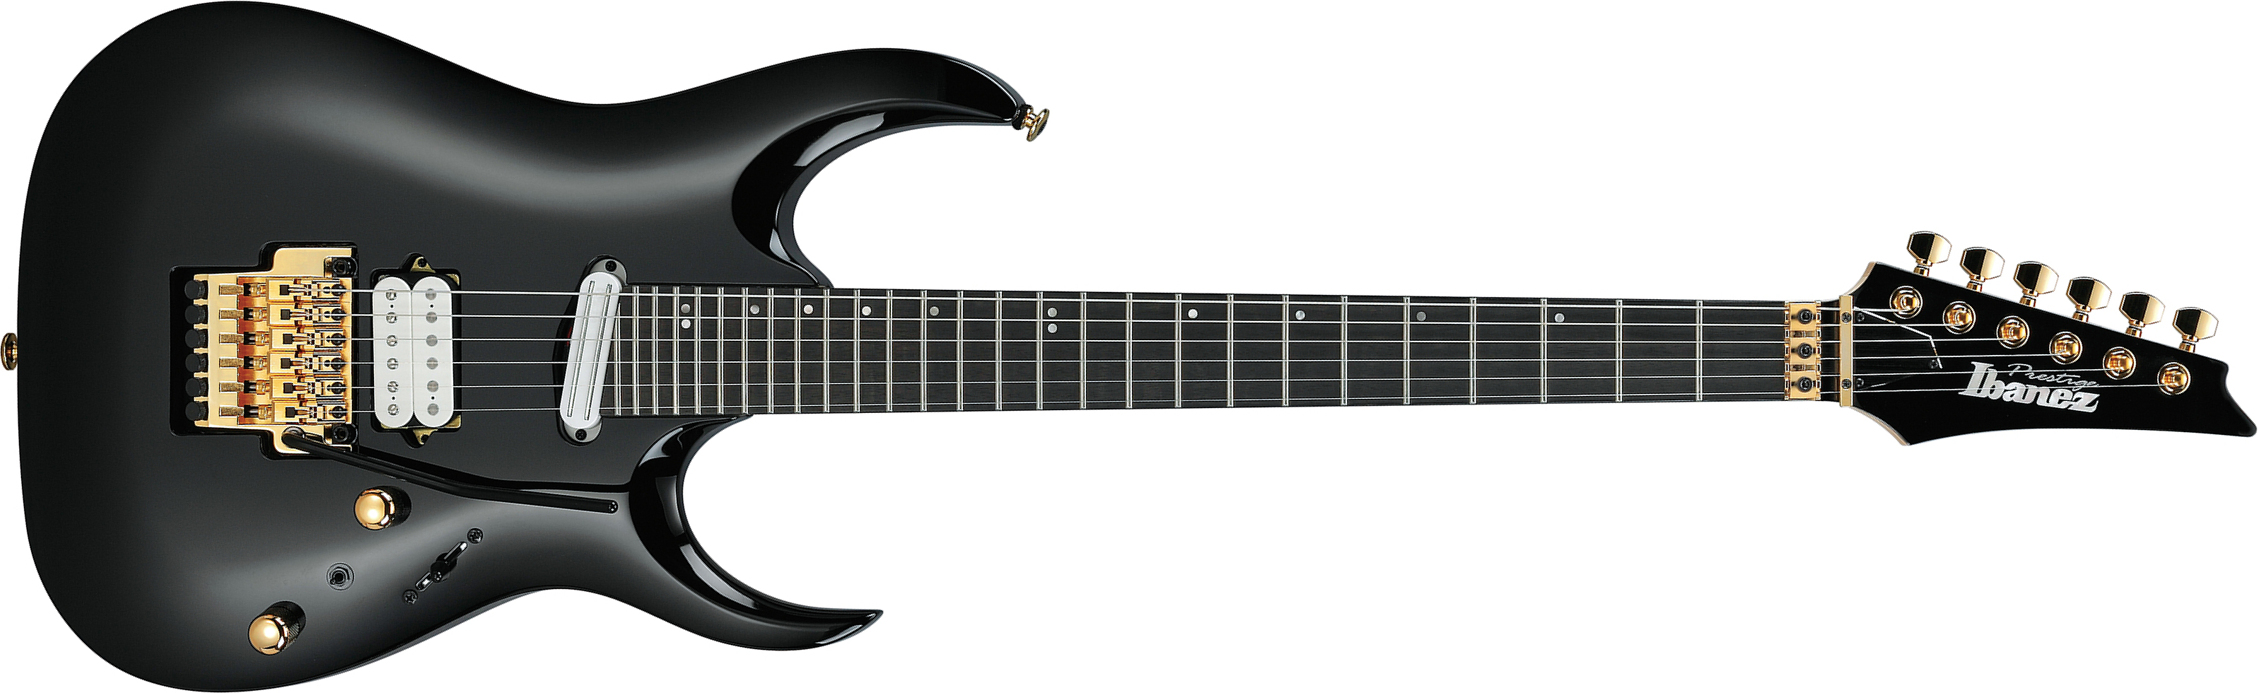 Ibanez Rga622xh Bk Prestige Jap 2h Dimarzio Fr Eb - Black - Str shape electric guitar - Main picture